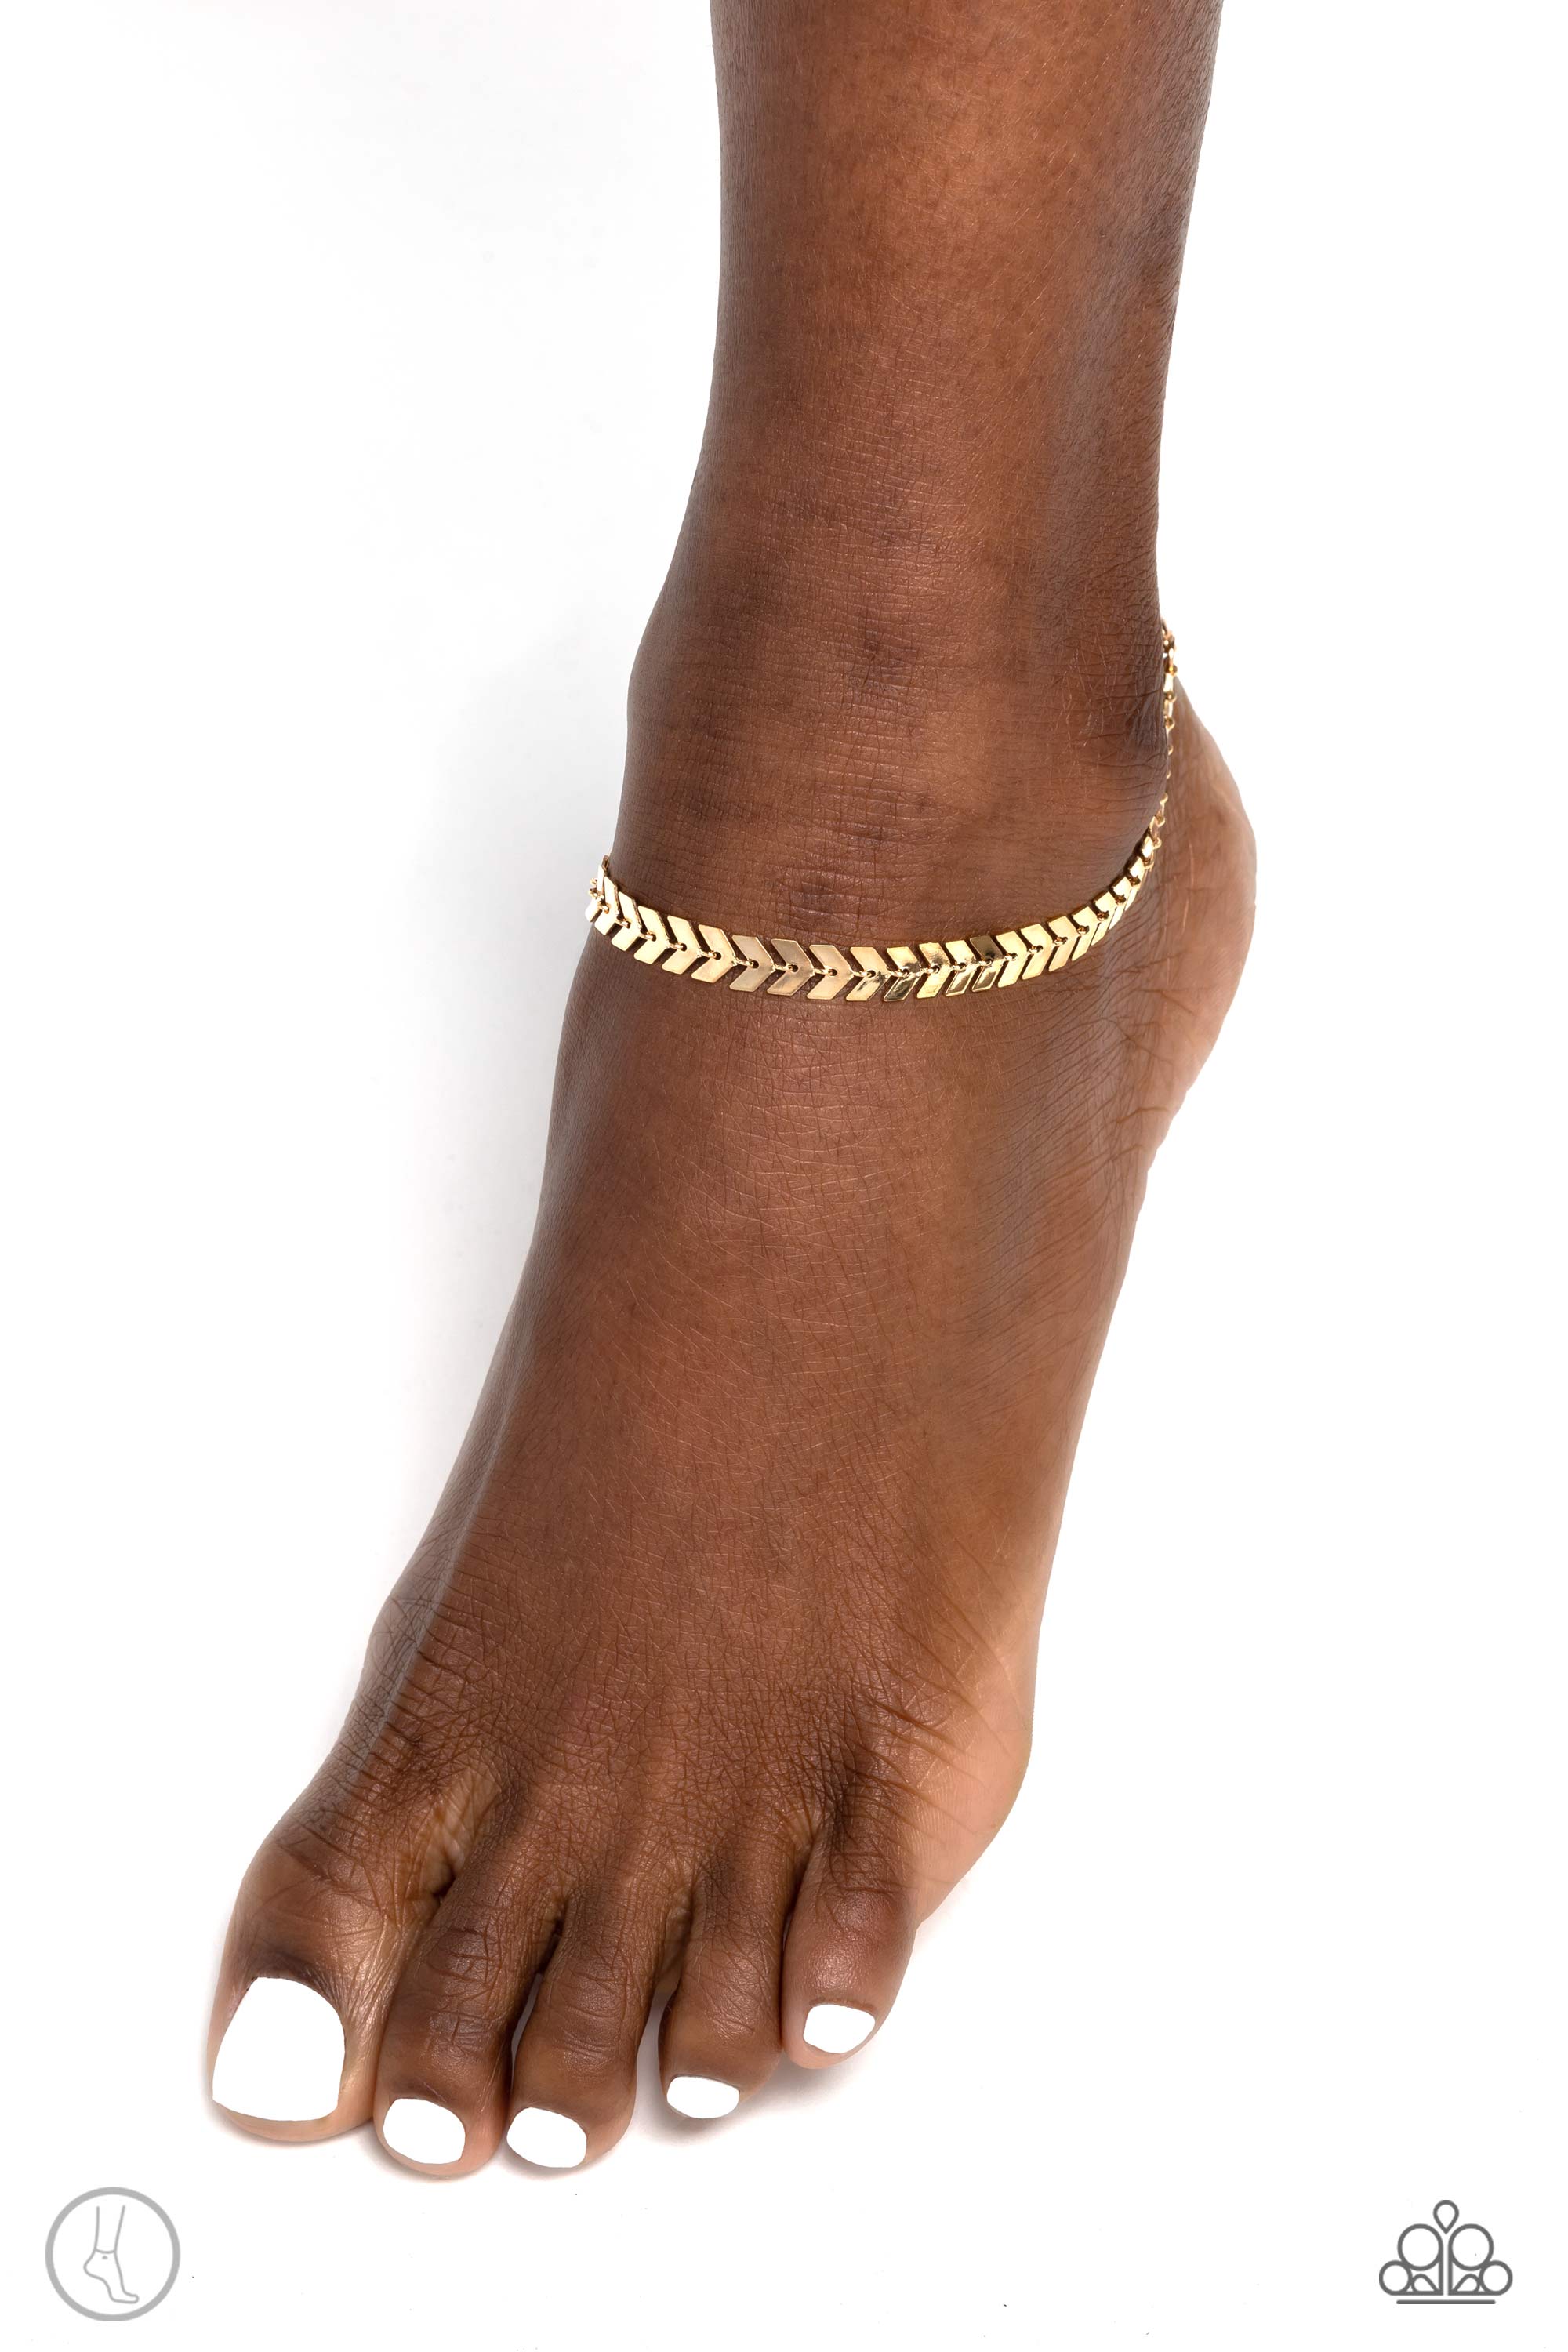 14K ITALY Gold Plated Brass 4mm HERRINGBONE Bling Ankle Bracelet Anklet 10